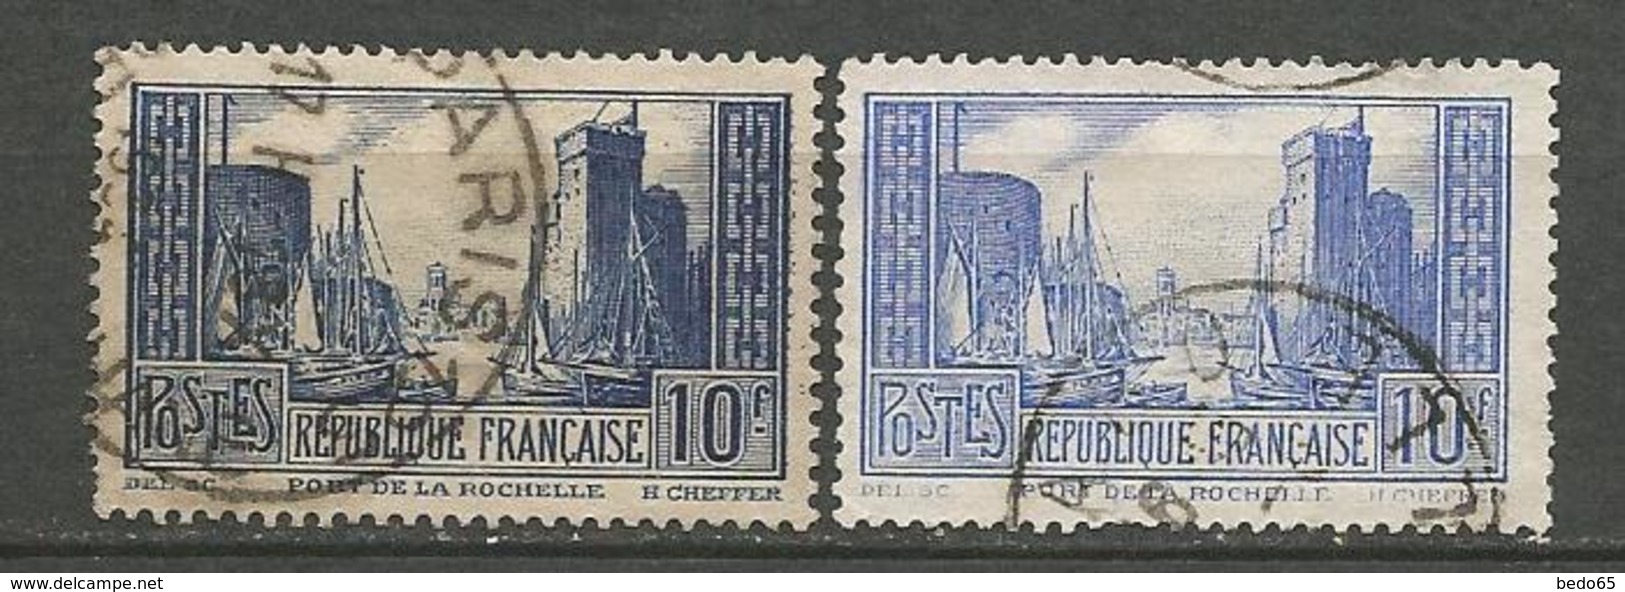 PORT DE LA ROCHELLE N° 261 ET 261b OBL - Used Stamps